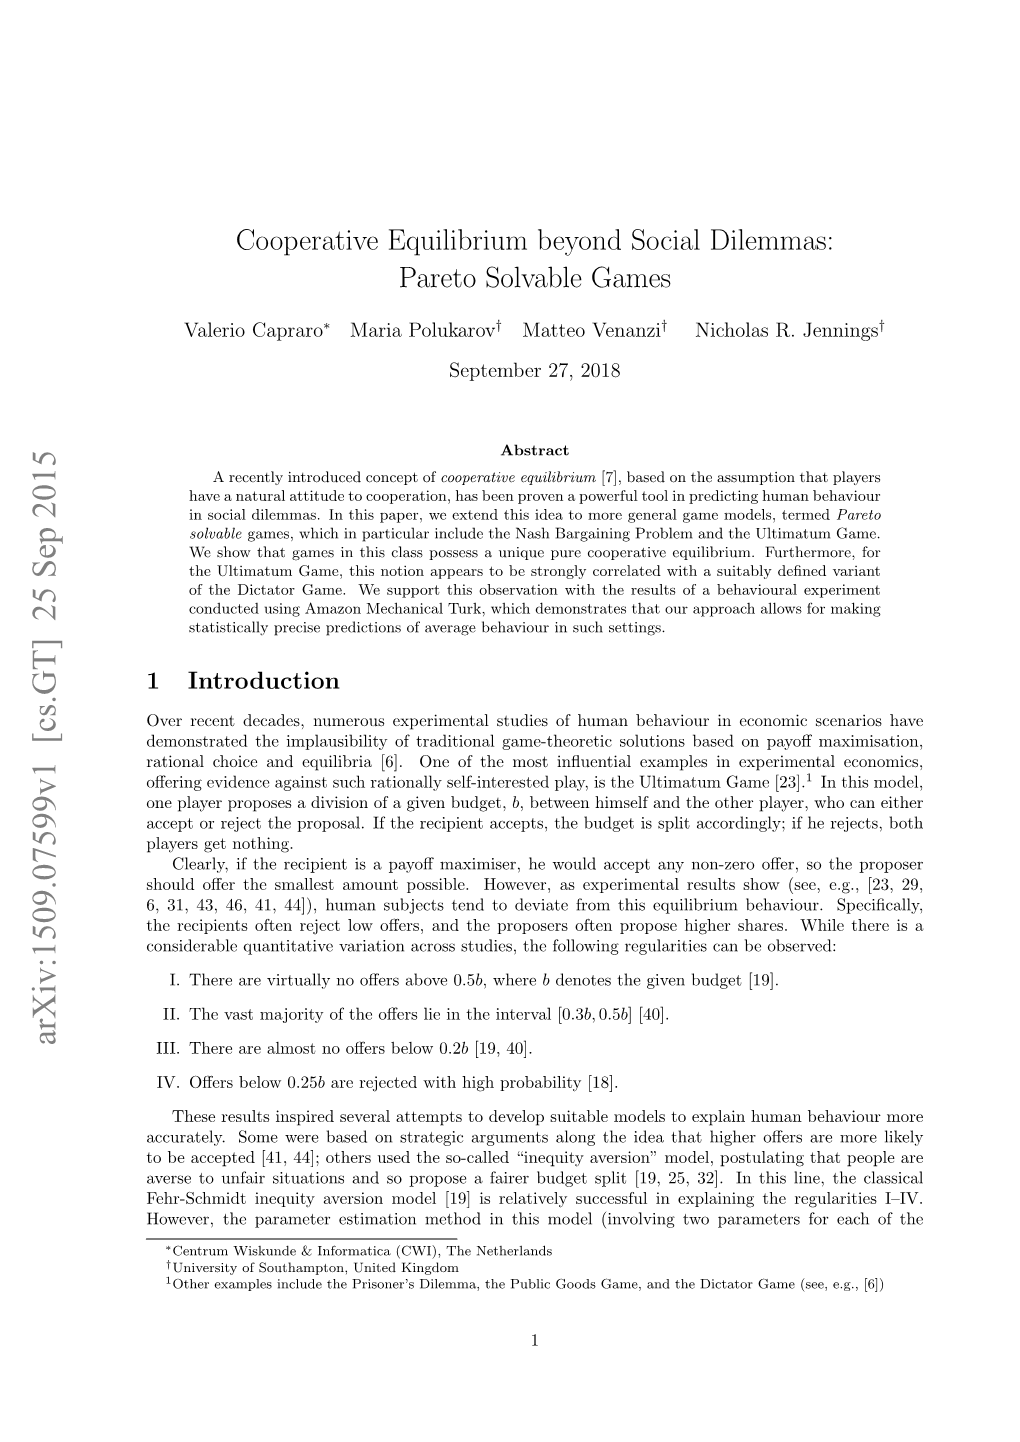 Cooperative Equilibrium Beyond Social Dilemmas: Pareto Solvable Games